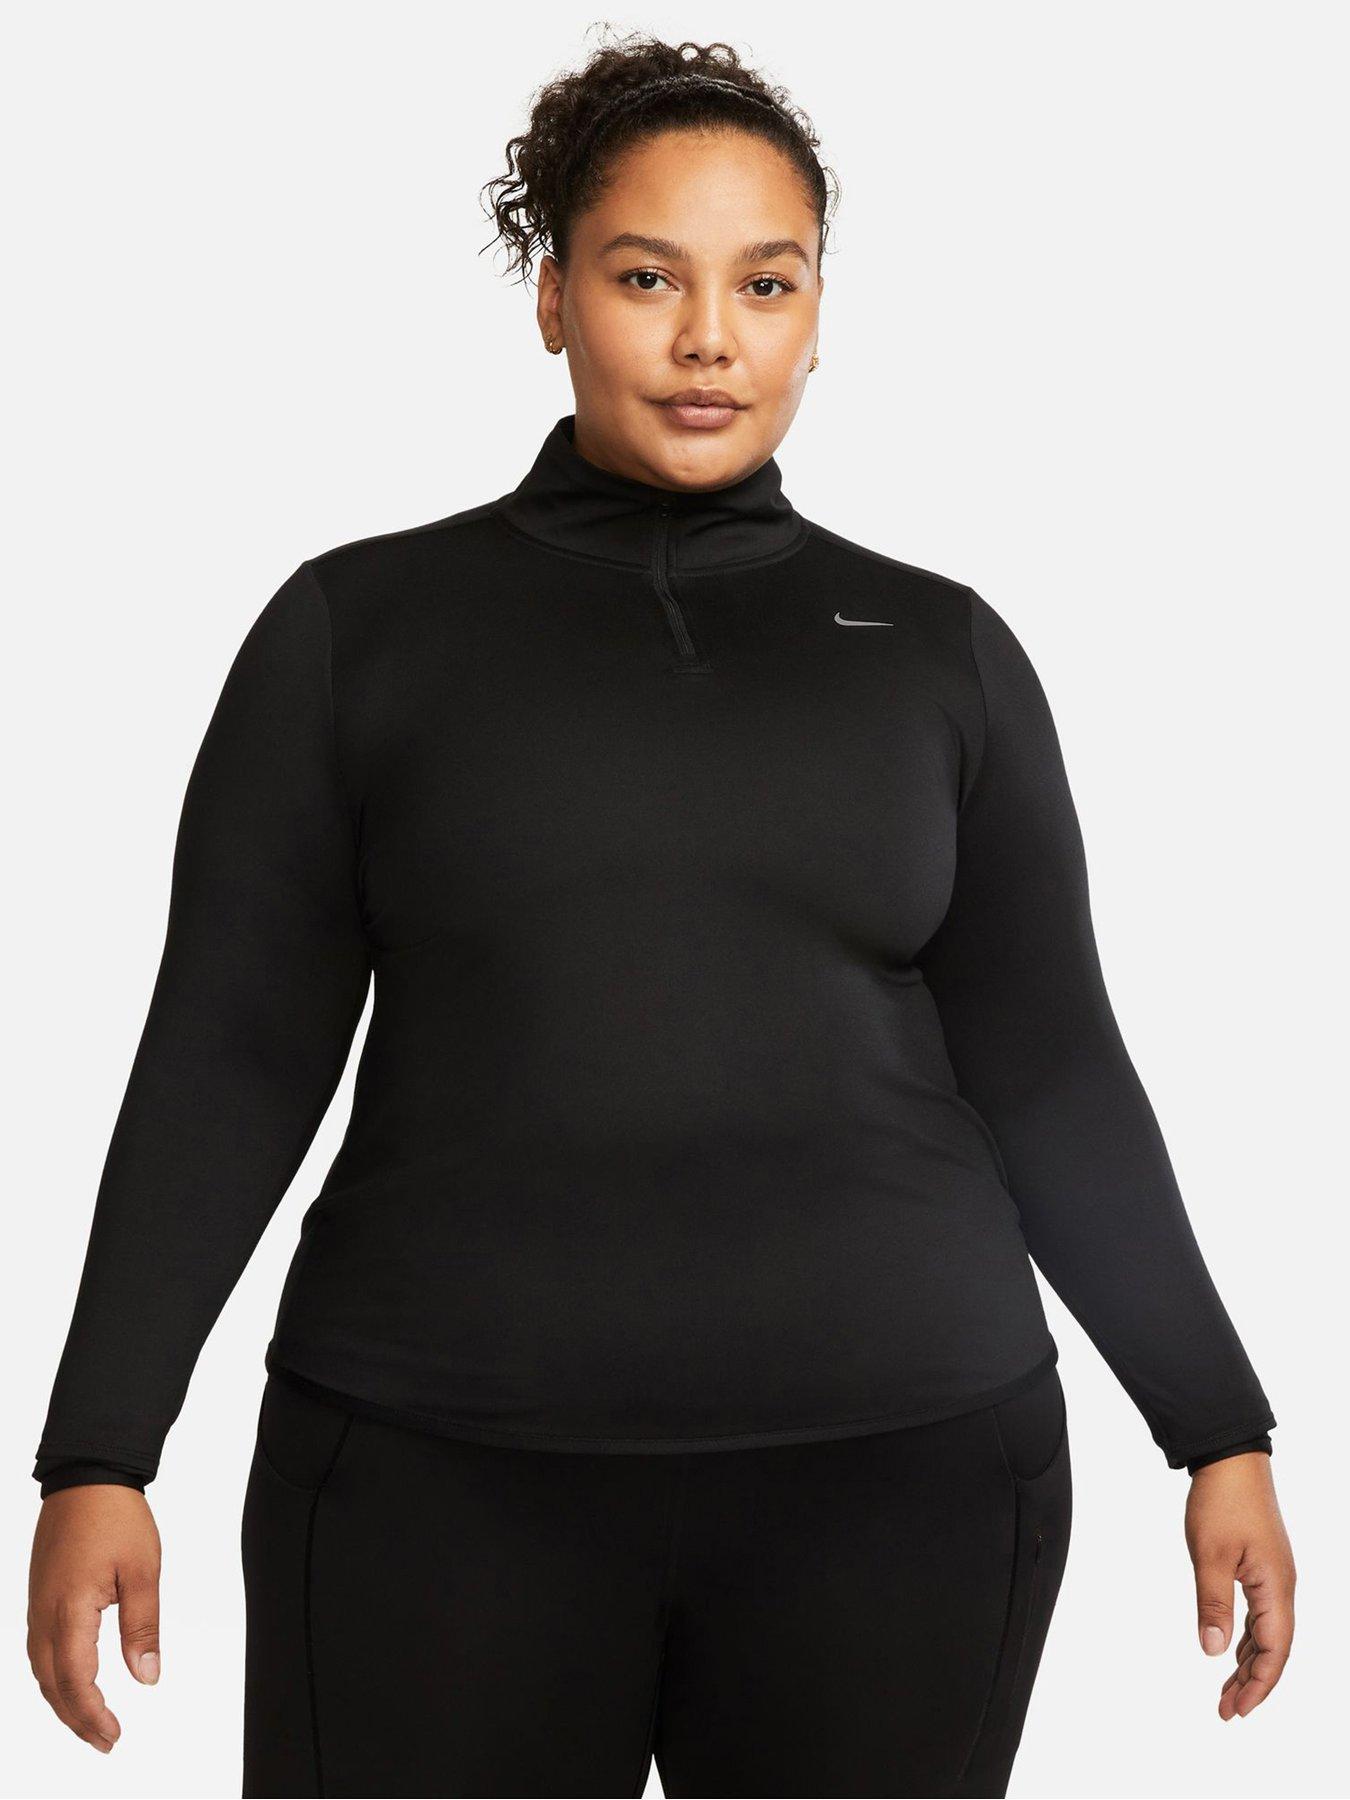 Nike Size 2XL Side Pocket Sportswear Women's Dri-Fit Crop Running